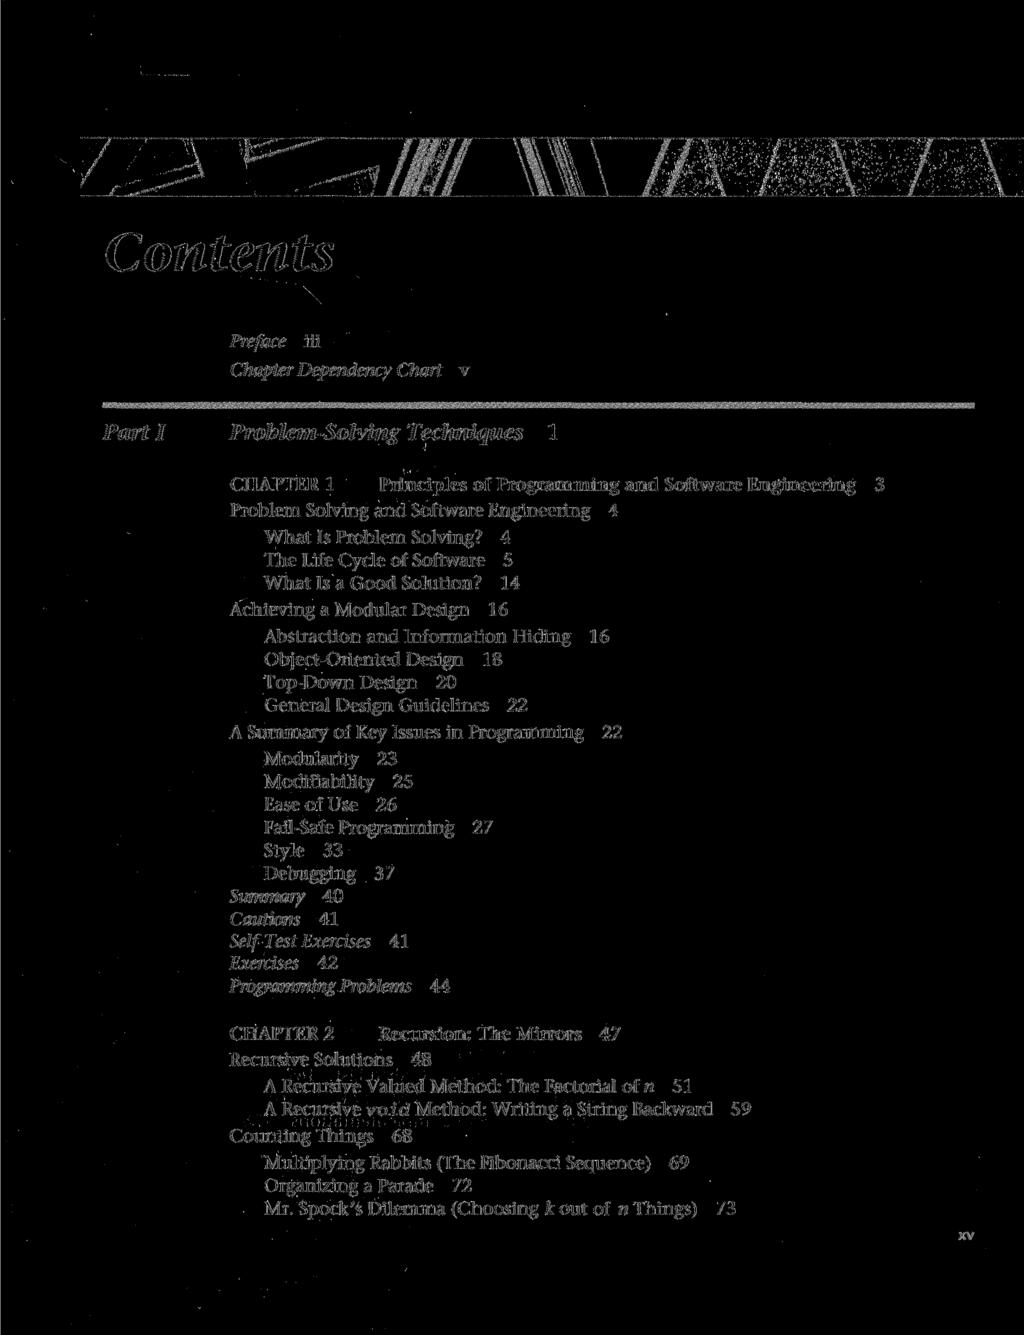 Contents Preface iii Chapter Dependency Chart v»mmwm mm>m:mmm» wmmmmmwm> wmmmmi wm<mmmmmmmmmmmmm~mmwmmmm;m«m& Part I Problem-Solving Techniques 1 CHAPTER 1 Principles of Programming and Software